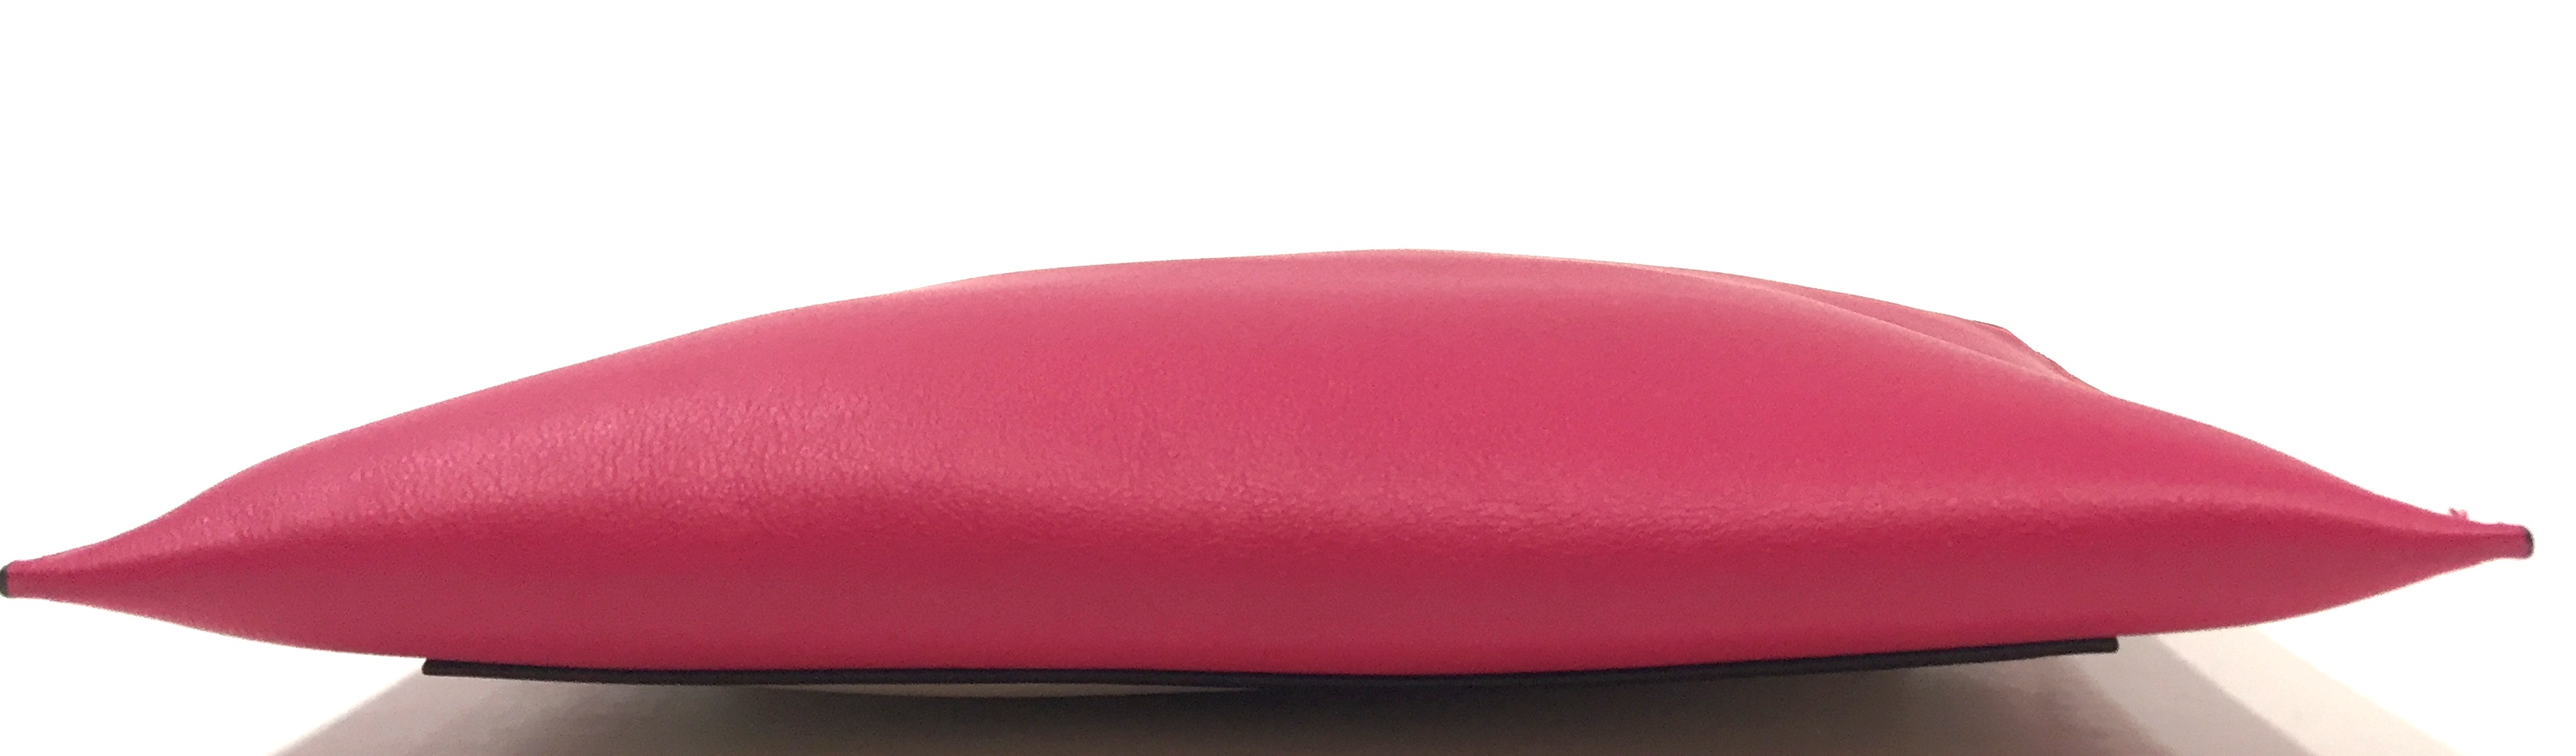 celine pink leather clutch bag pocket  